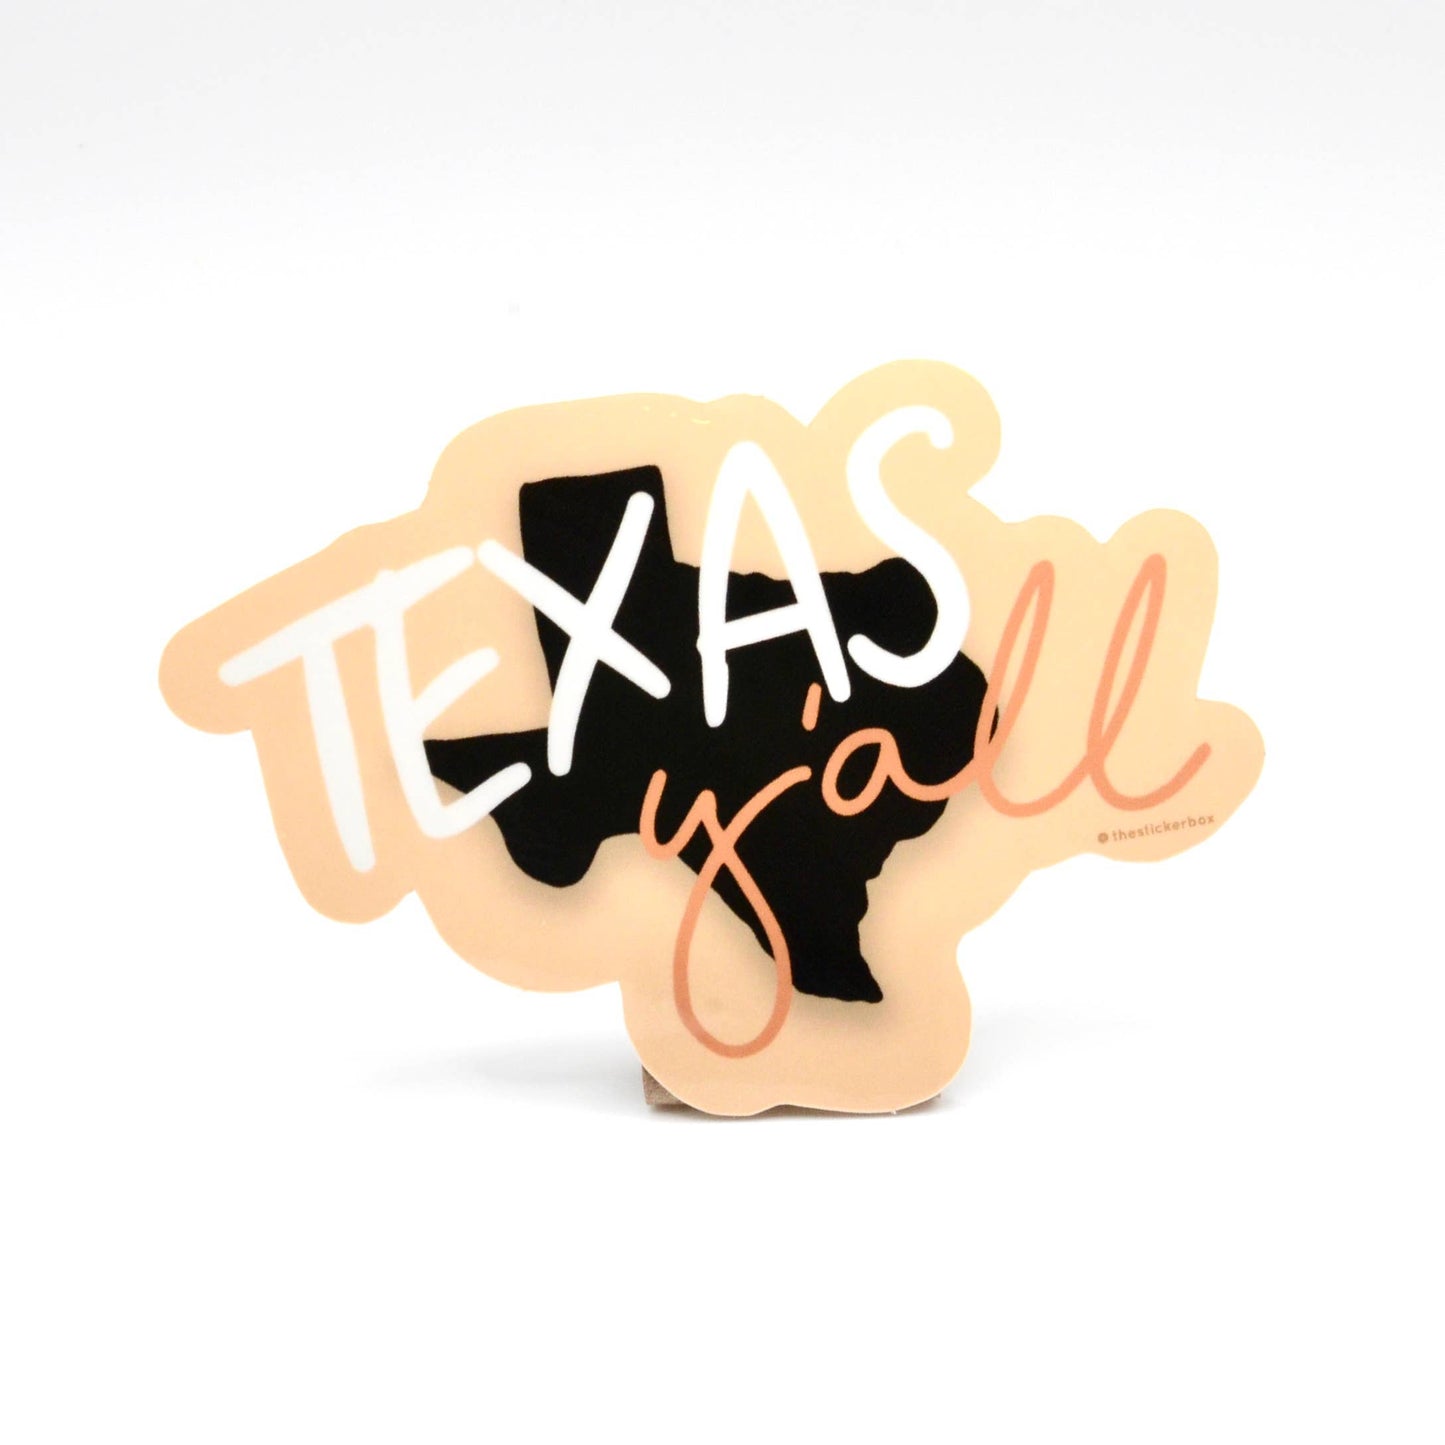 "Texas Y'all" Sticker